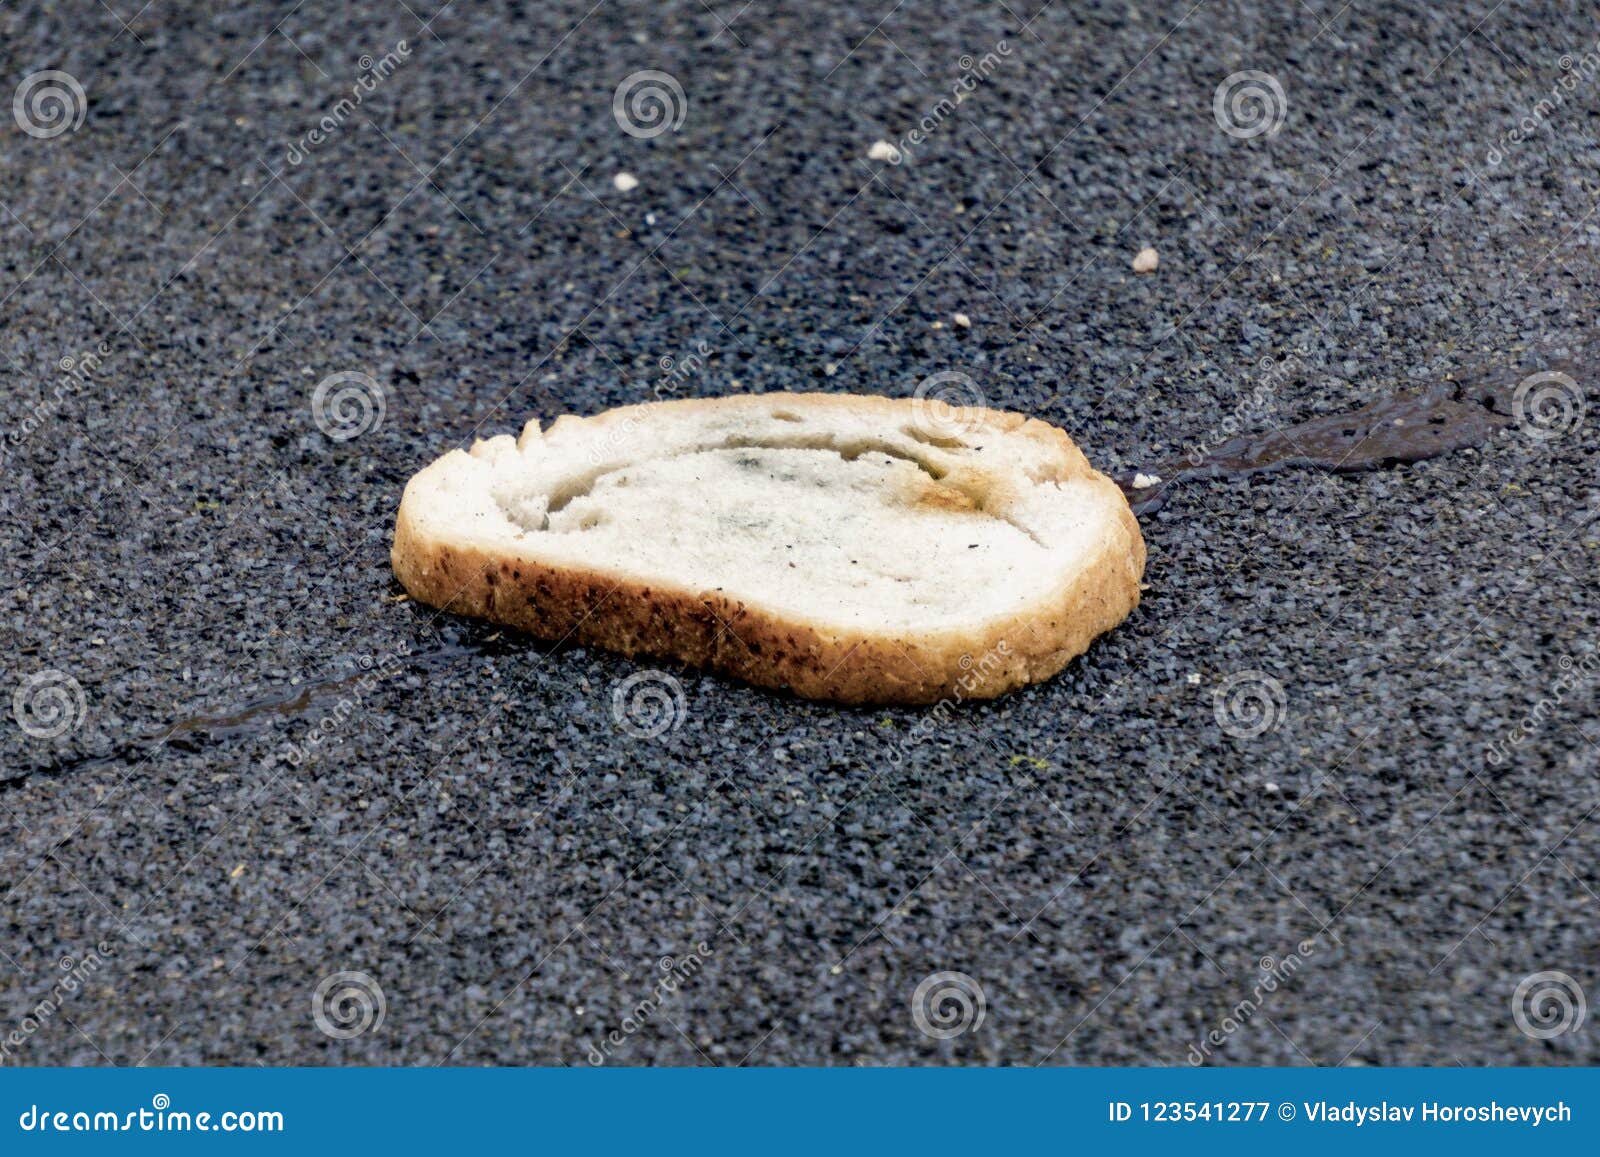 Пирожок разломила да кусочек прикусила. Кусок хлеба на столе. Хлеб лежит на земле. Крошки хлеба на асфальте. Хлеб валяется.